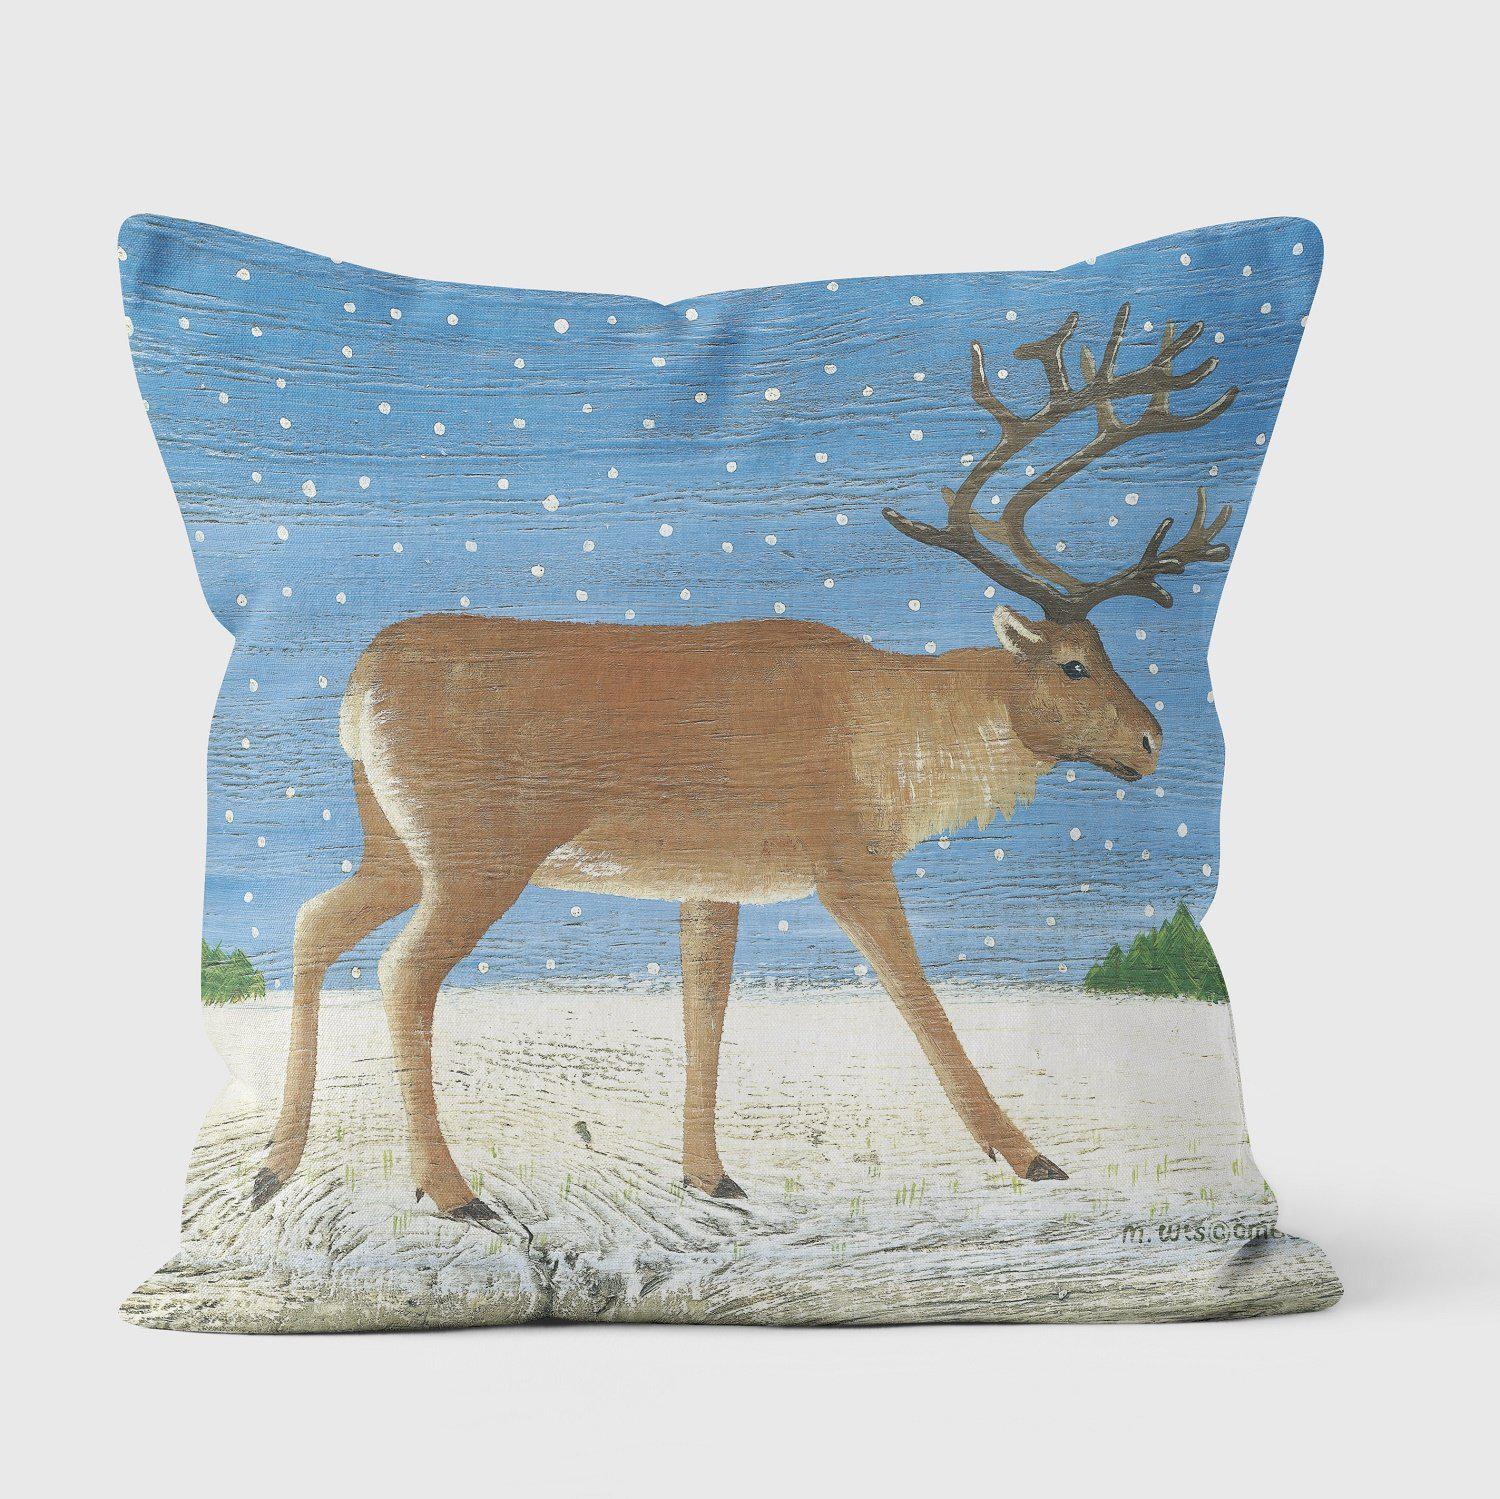 Christmas Reindeer - Martin Wiscombe Cushions - Handmade Cushions UK - WeLoveCushions